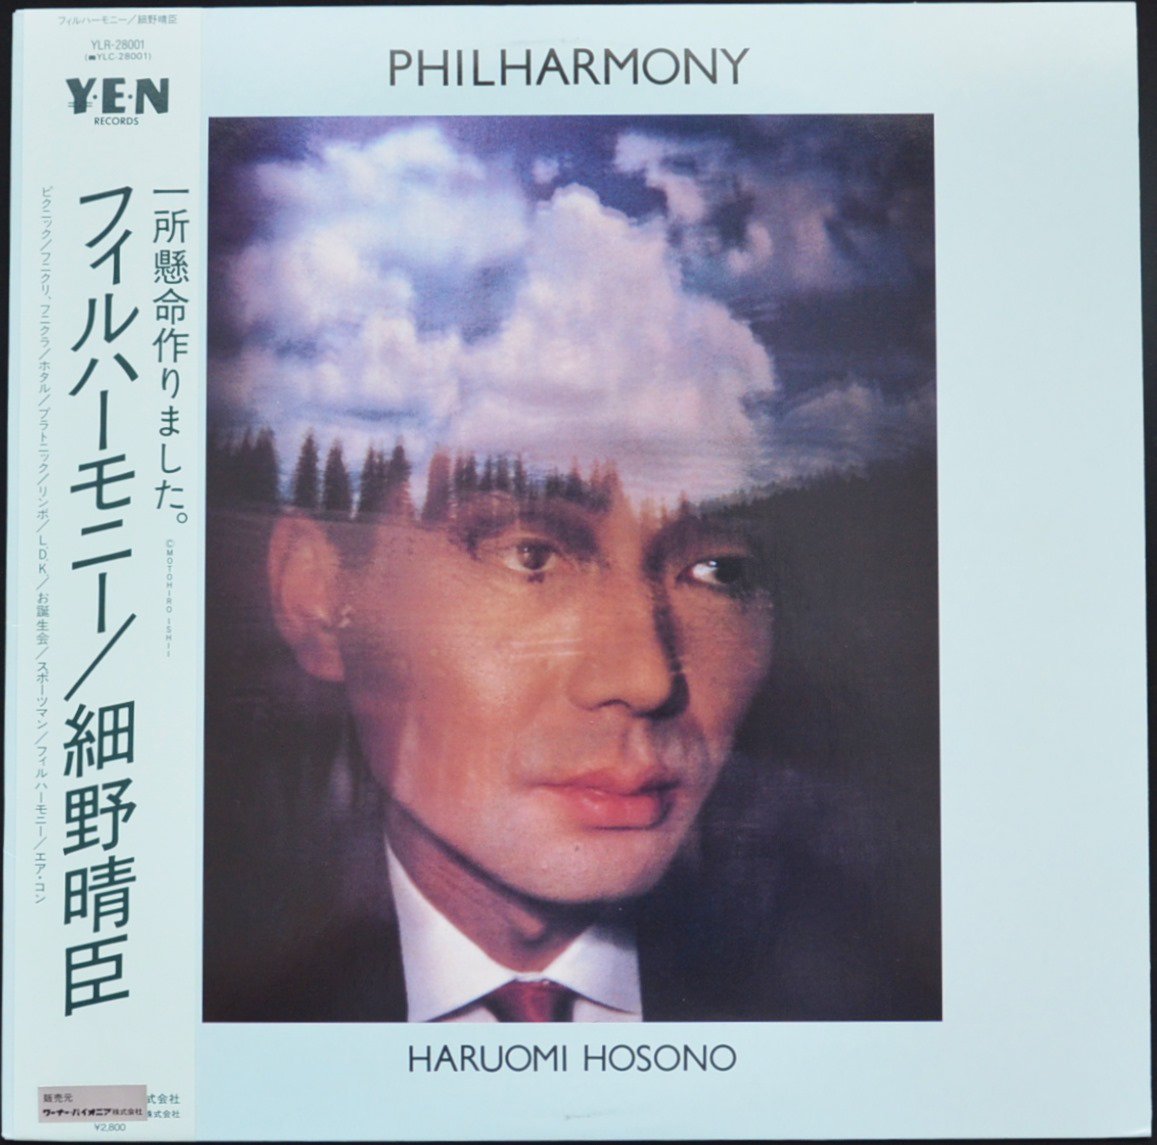 細野晴臣 HARUOMI HOSONO / フィル・ハーモニー PHILHARMONY (LP 